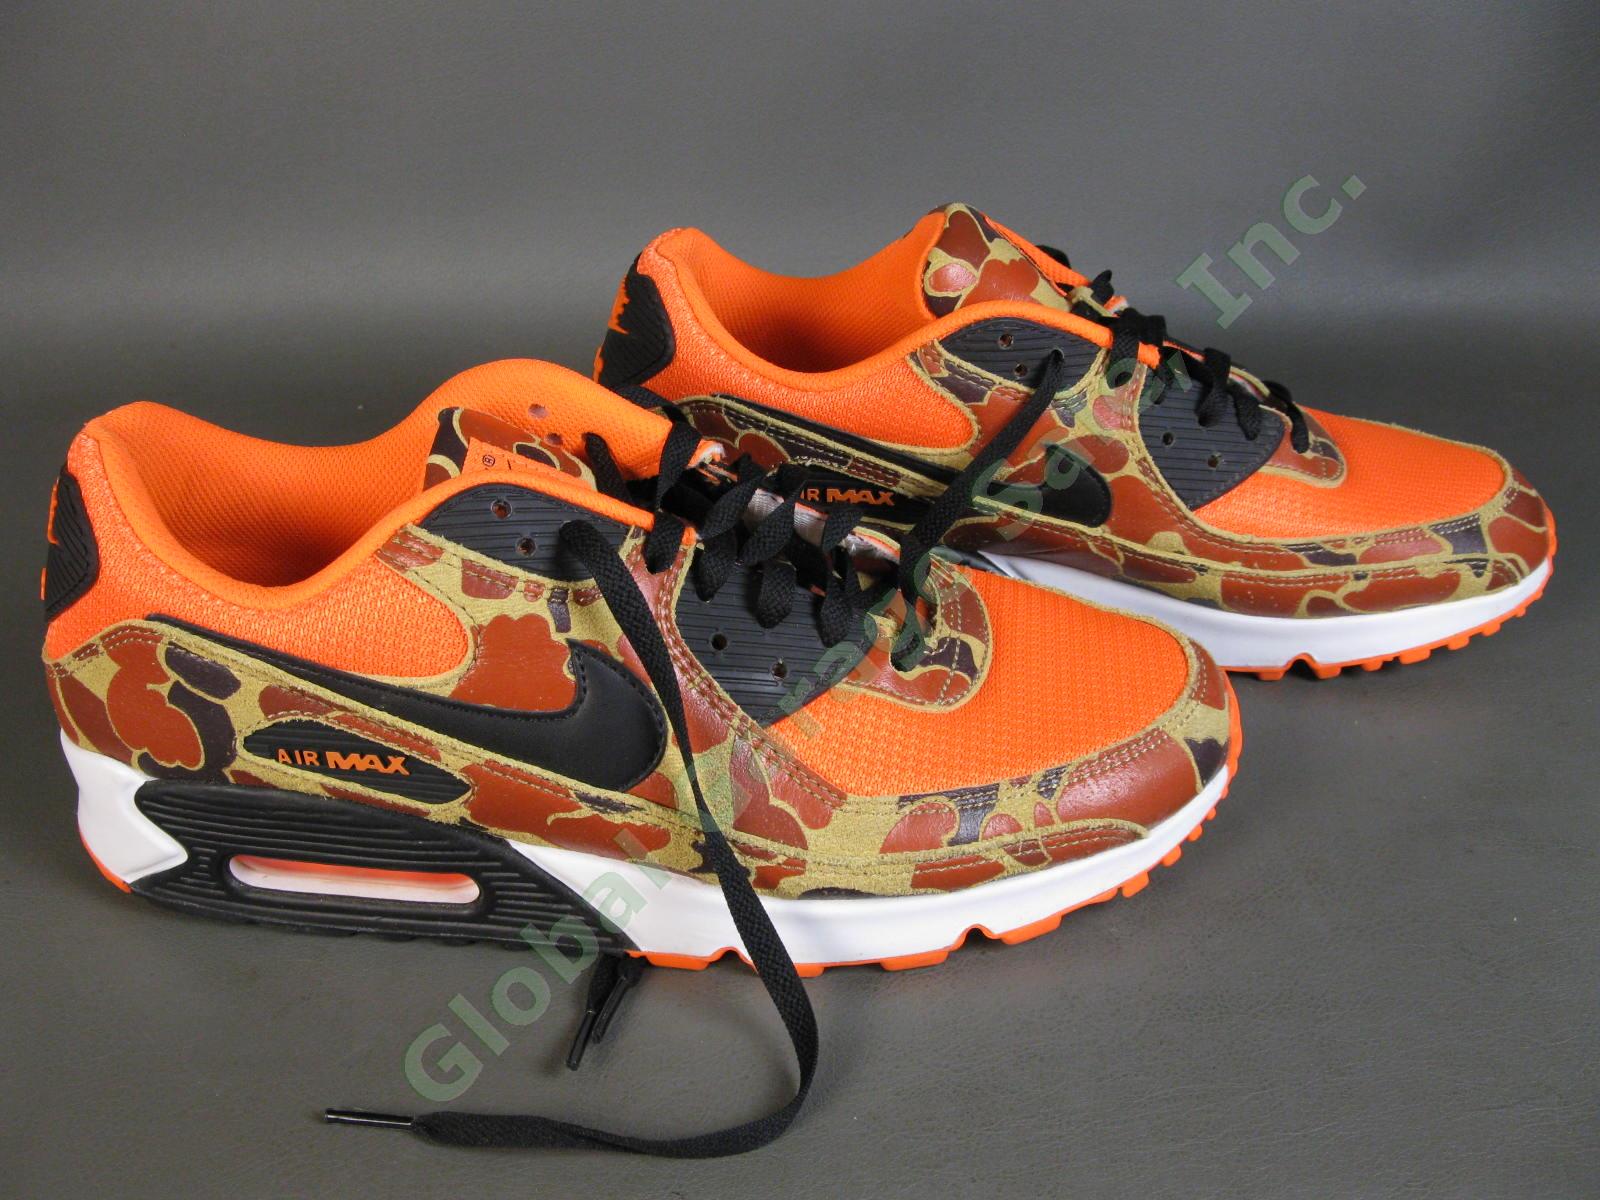 Nike Air Max 90 Orange Duck Camo Shoes CW4039-800 US Men Size 12 Excellent Shape 2